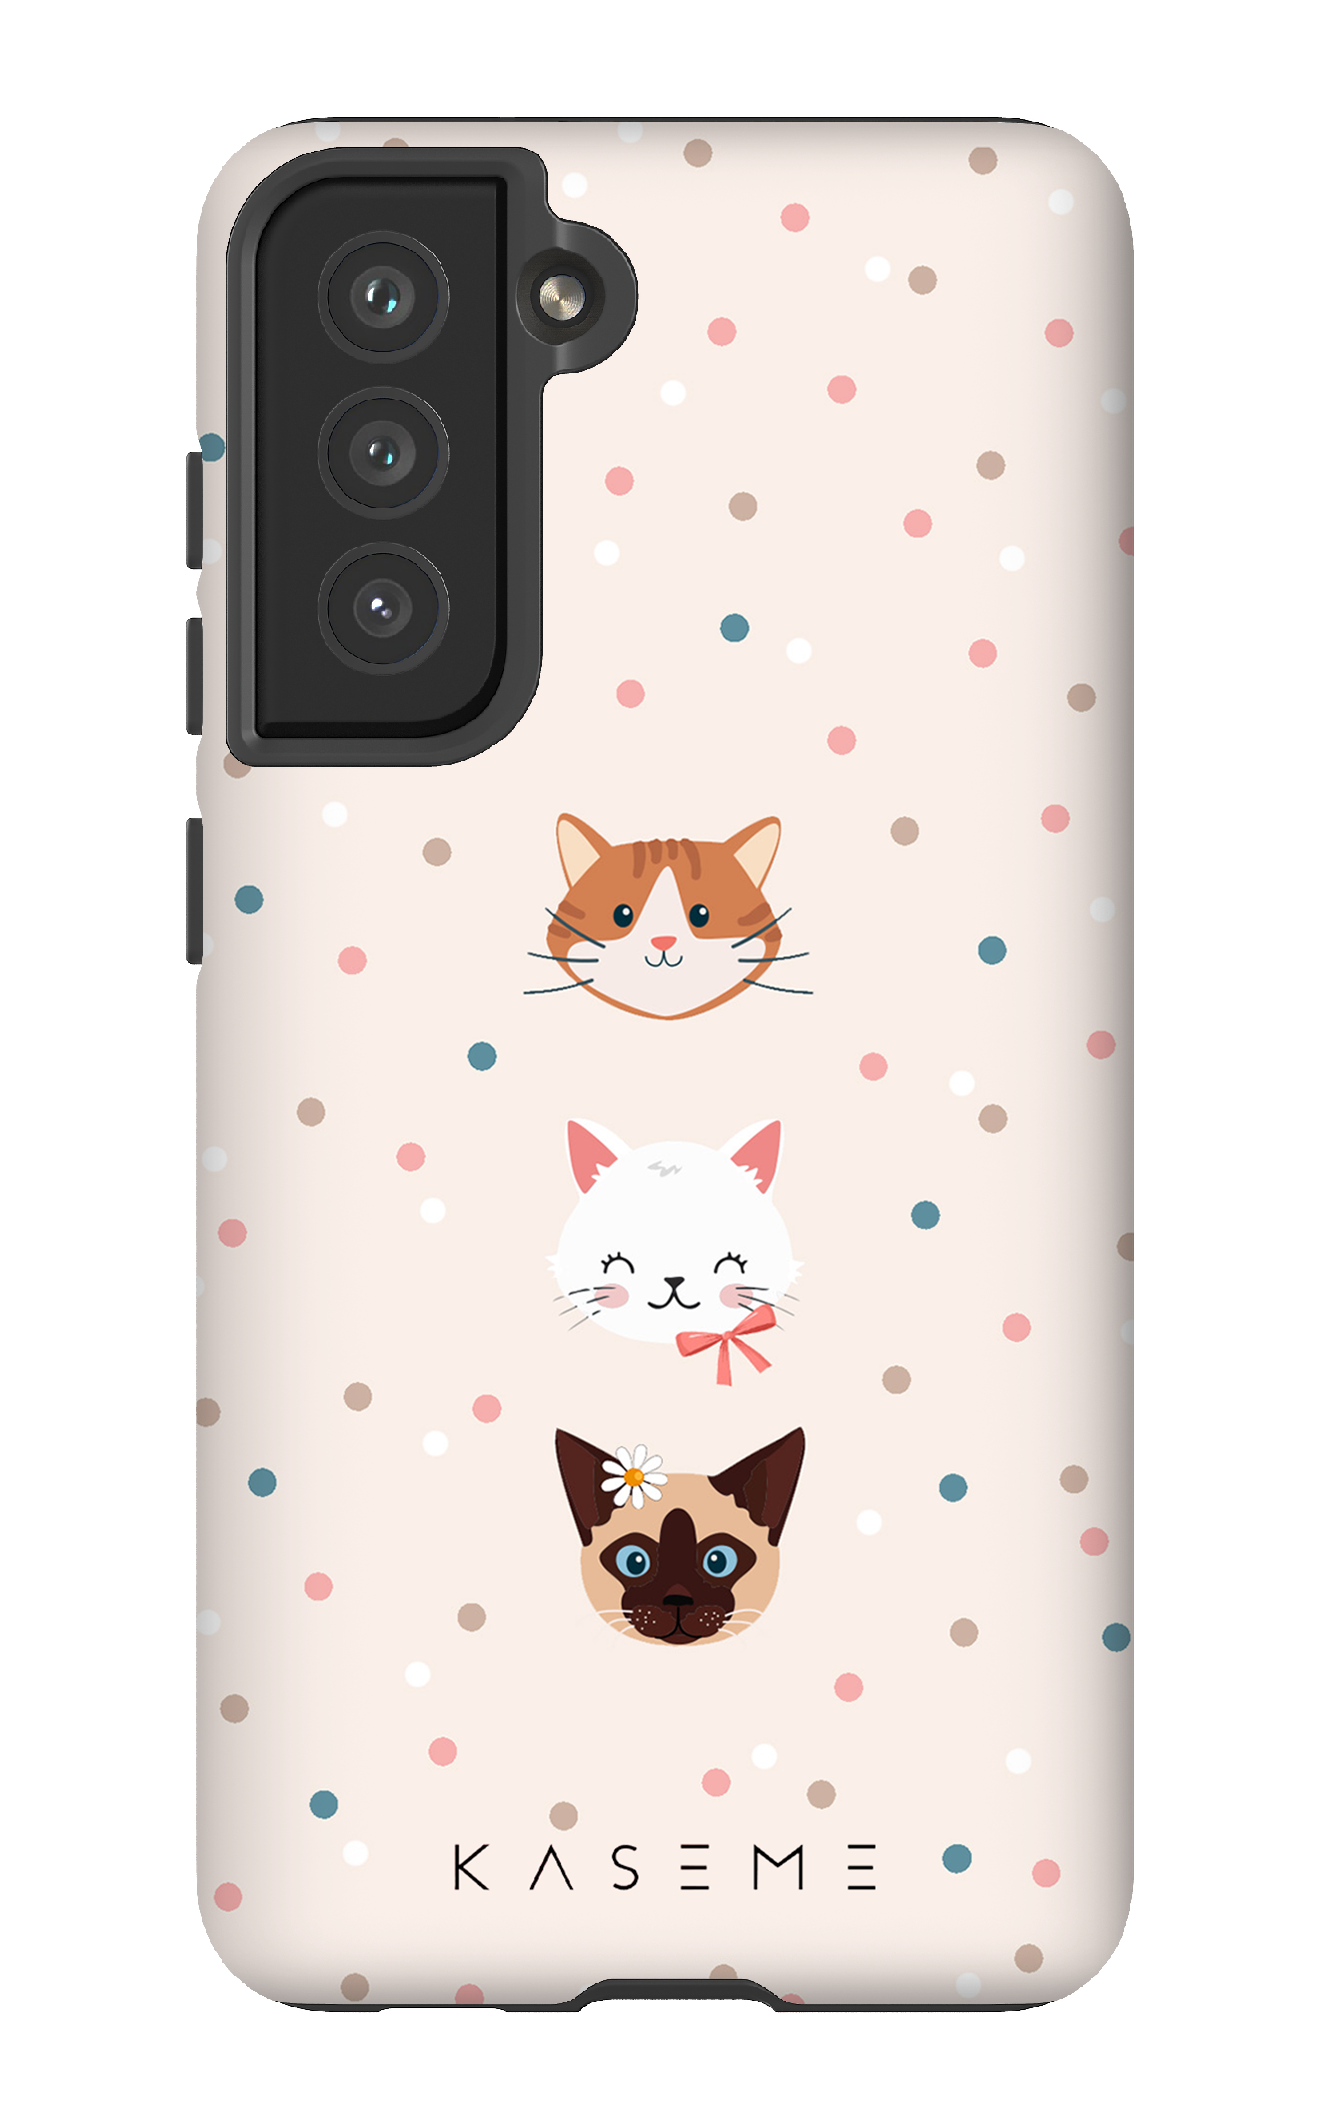 Cat lover by Marina Bastarache x SPCA - Galaxy S21FE